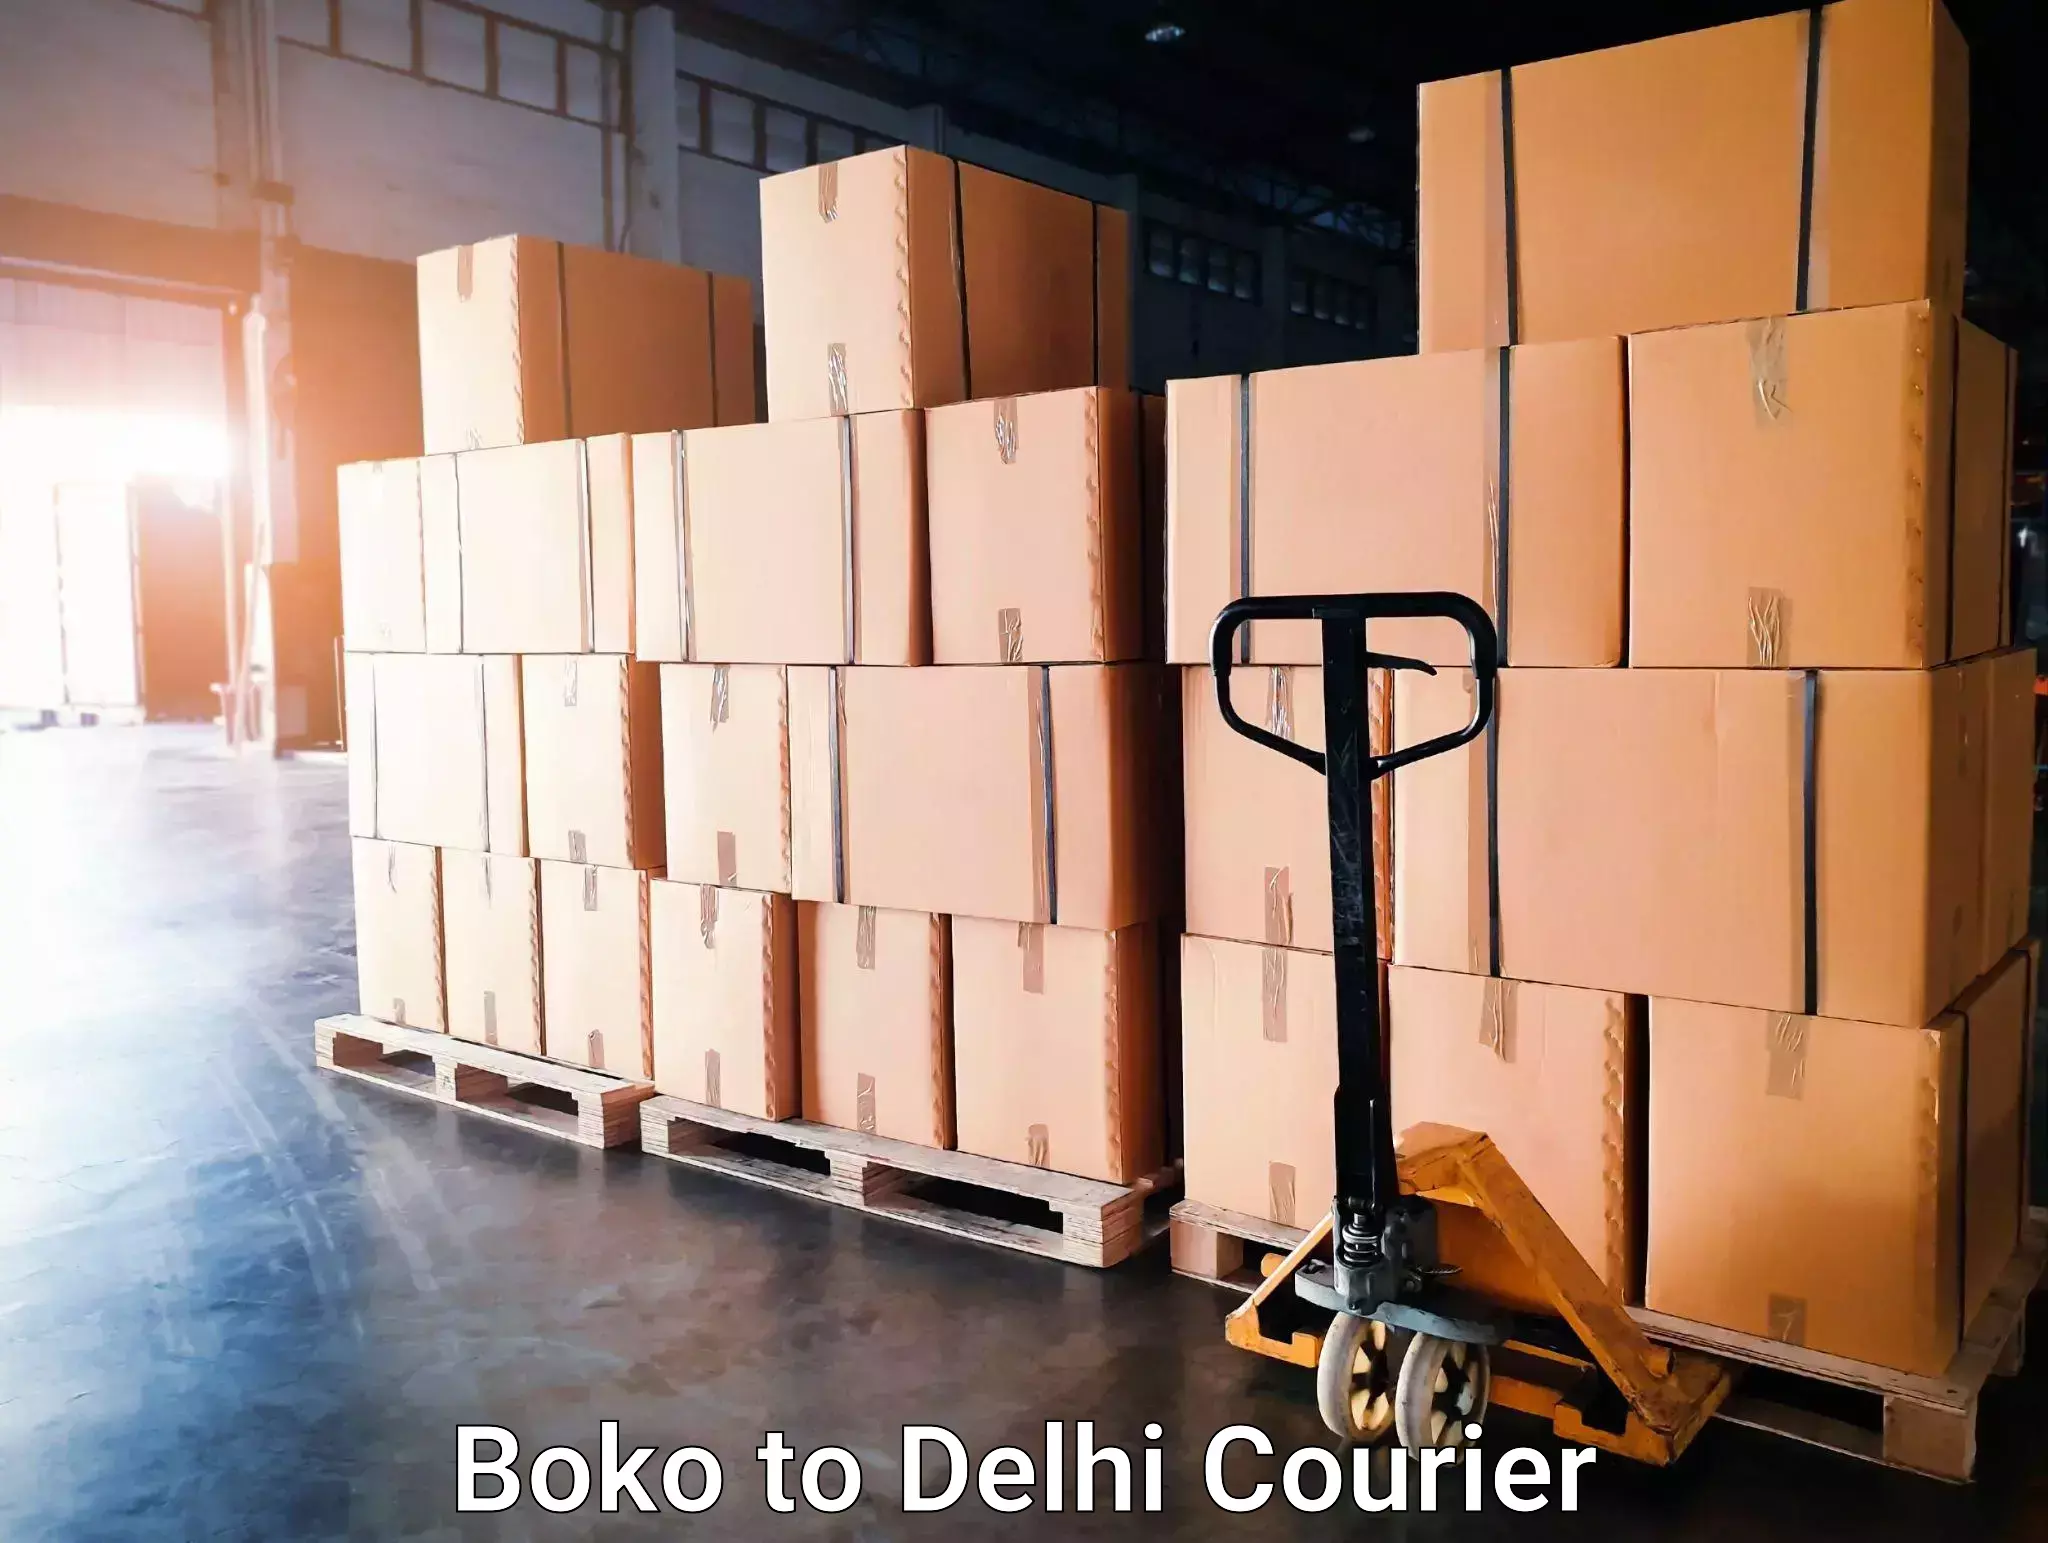 Courier service comparison Boko to NIT Delhi